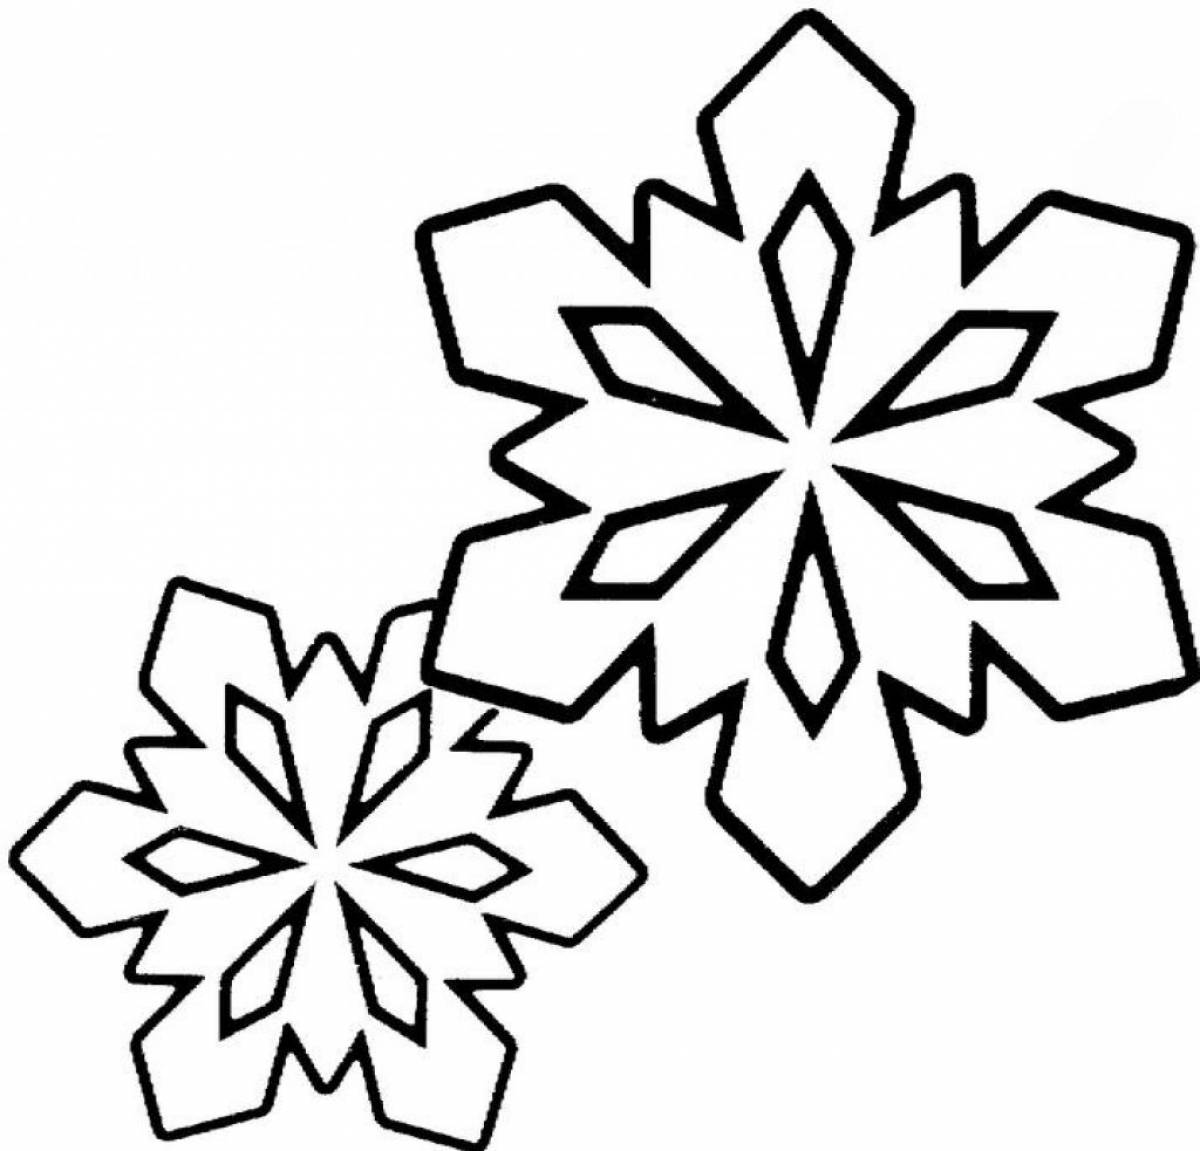 Two snowflakes